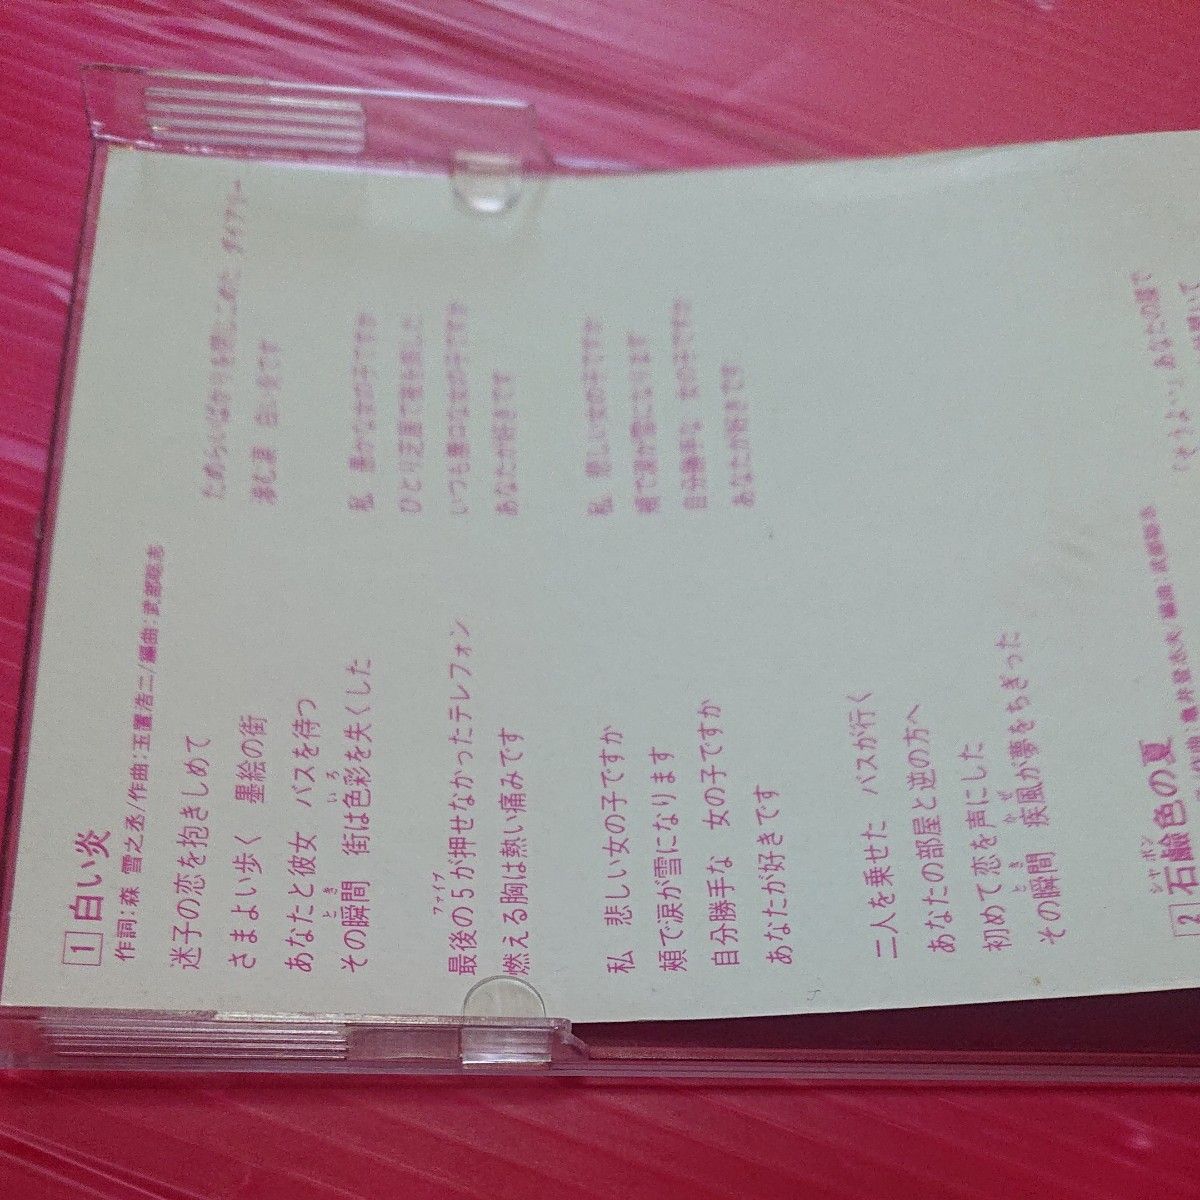 斉藤由貴 /白い炎 CD シングル 8センチ 8cm 作曲者 玉置浩二